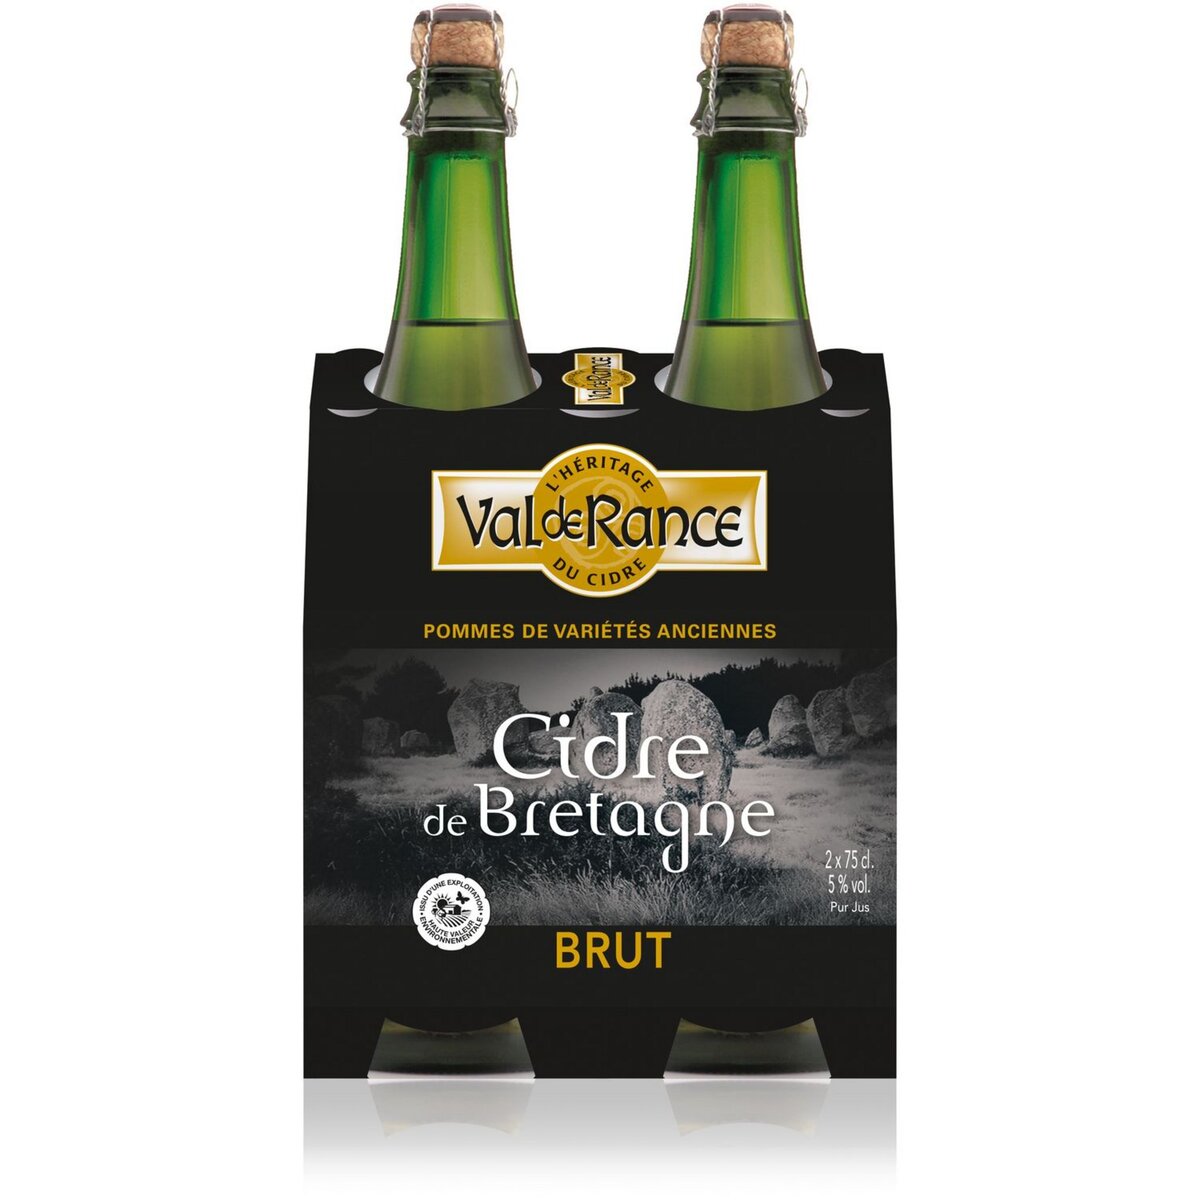 VAL DE RANCE Cidre de Bretagne brut 2% 2x75cl